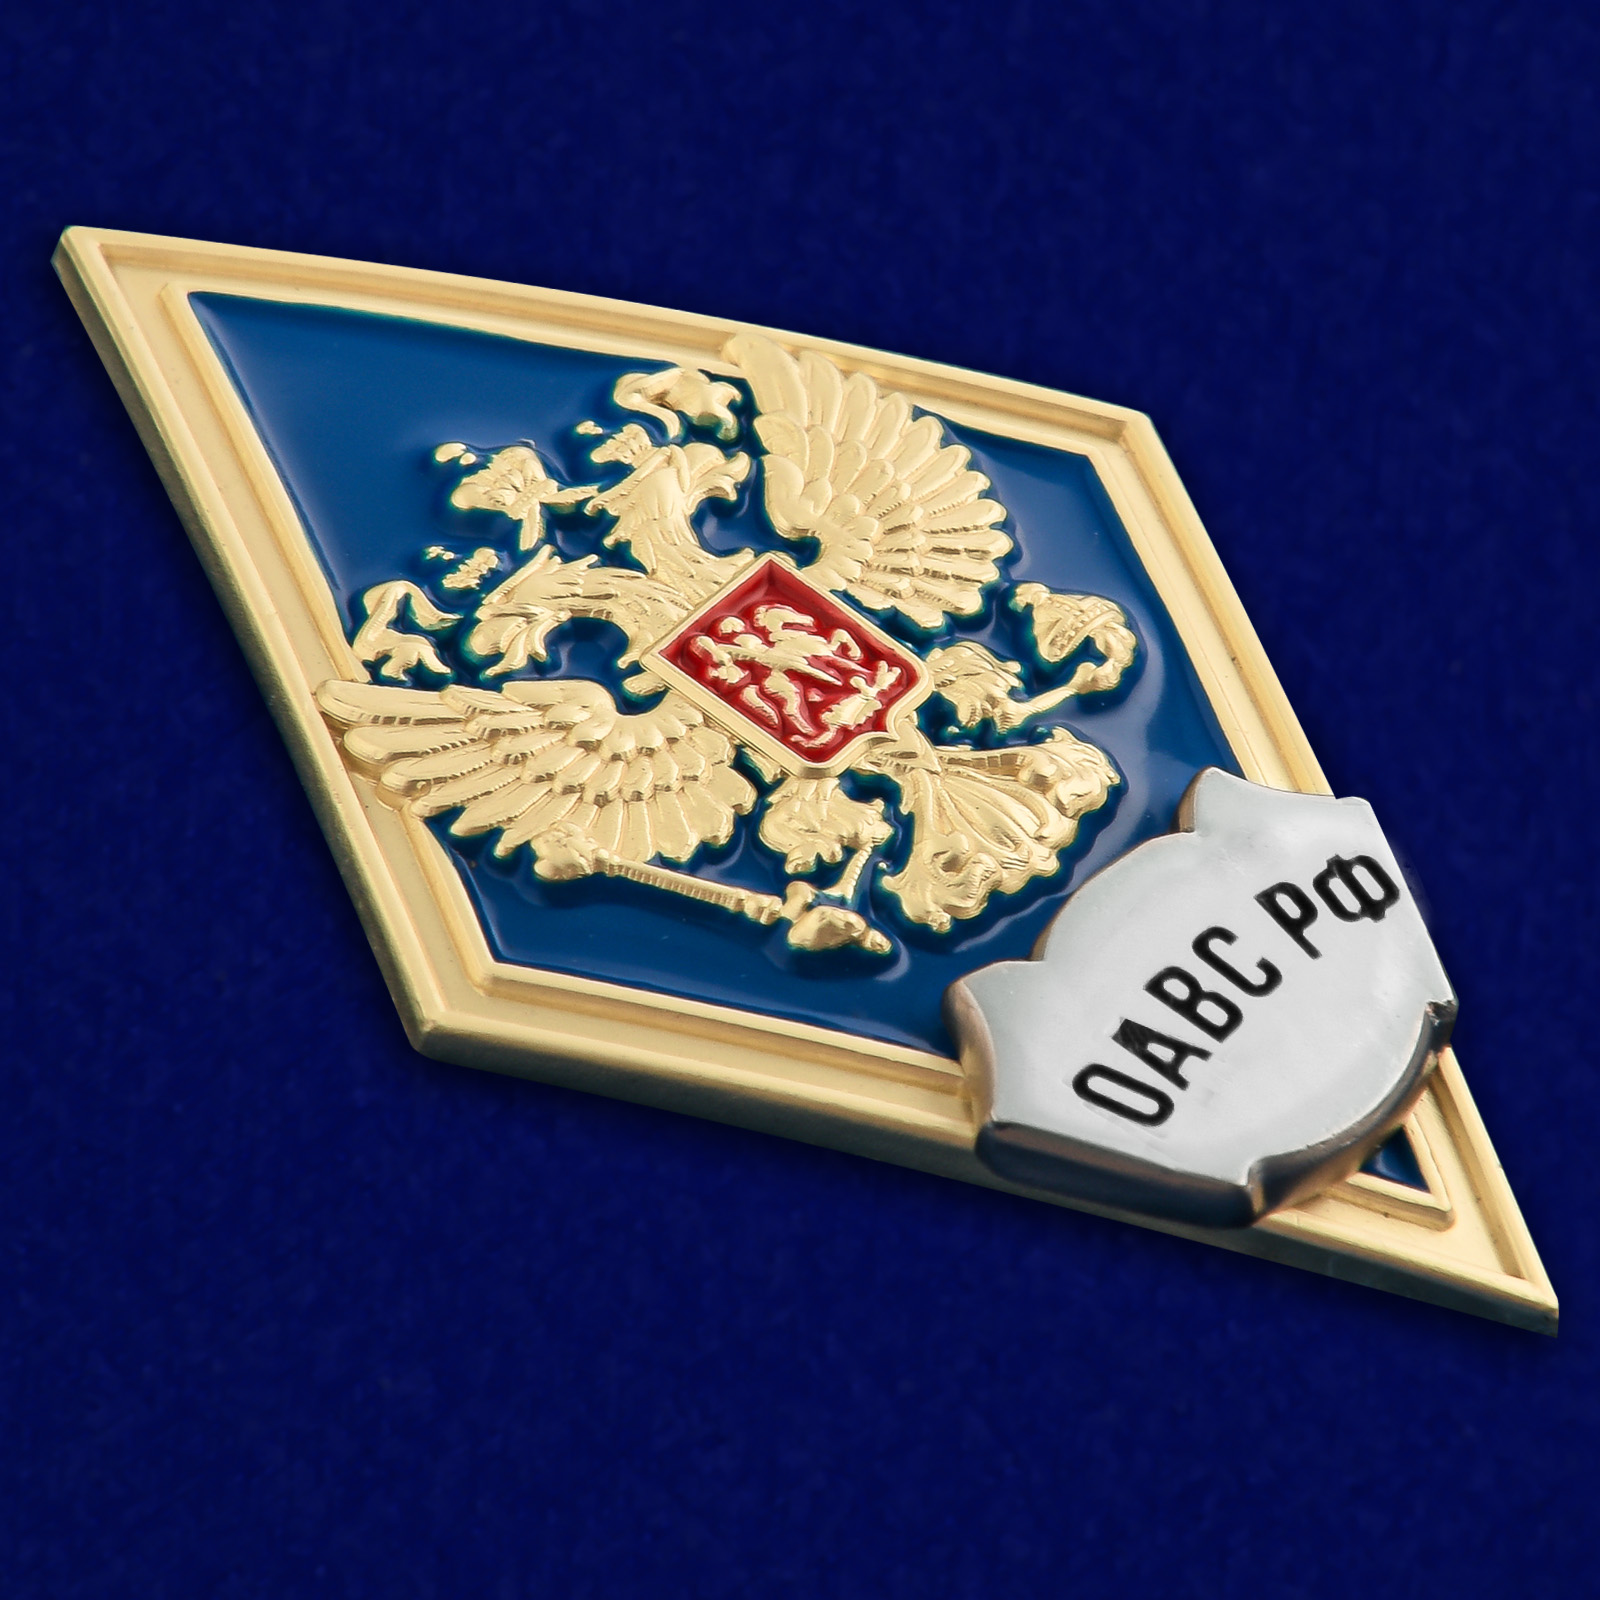 Знак об окончании Общевойсковой академии Вооружённых сил России